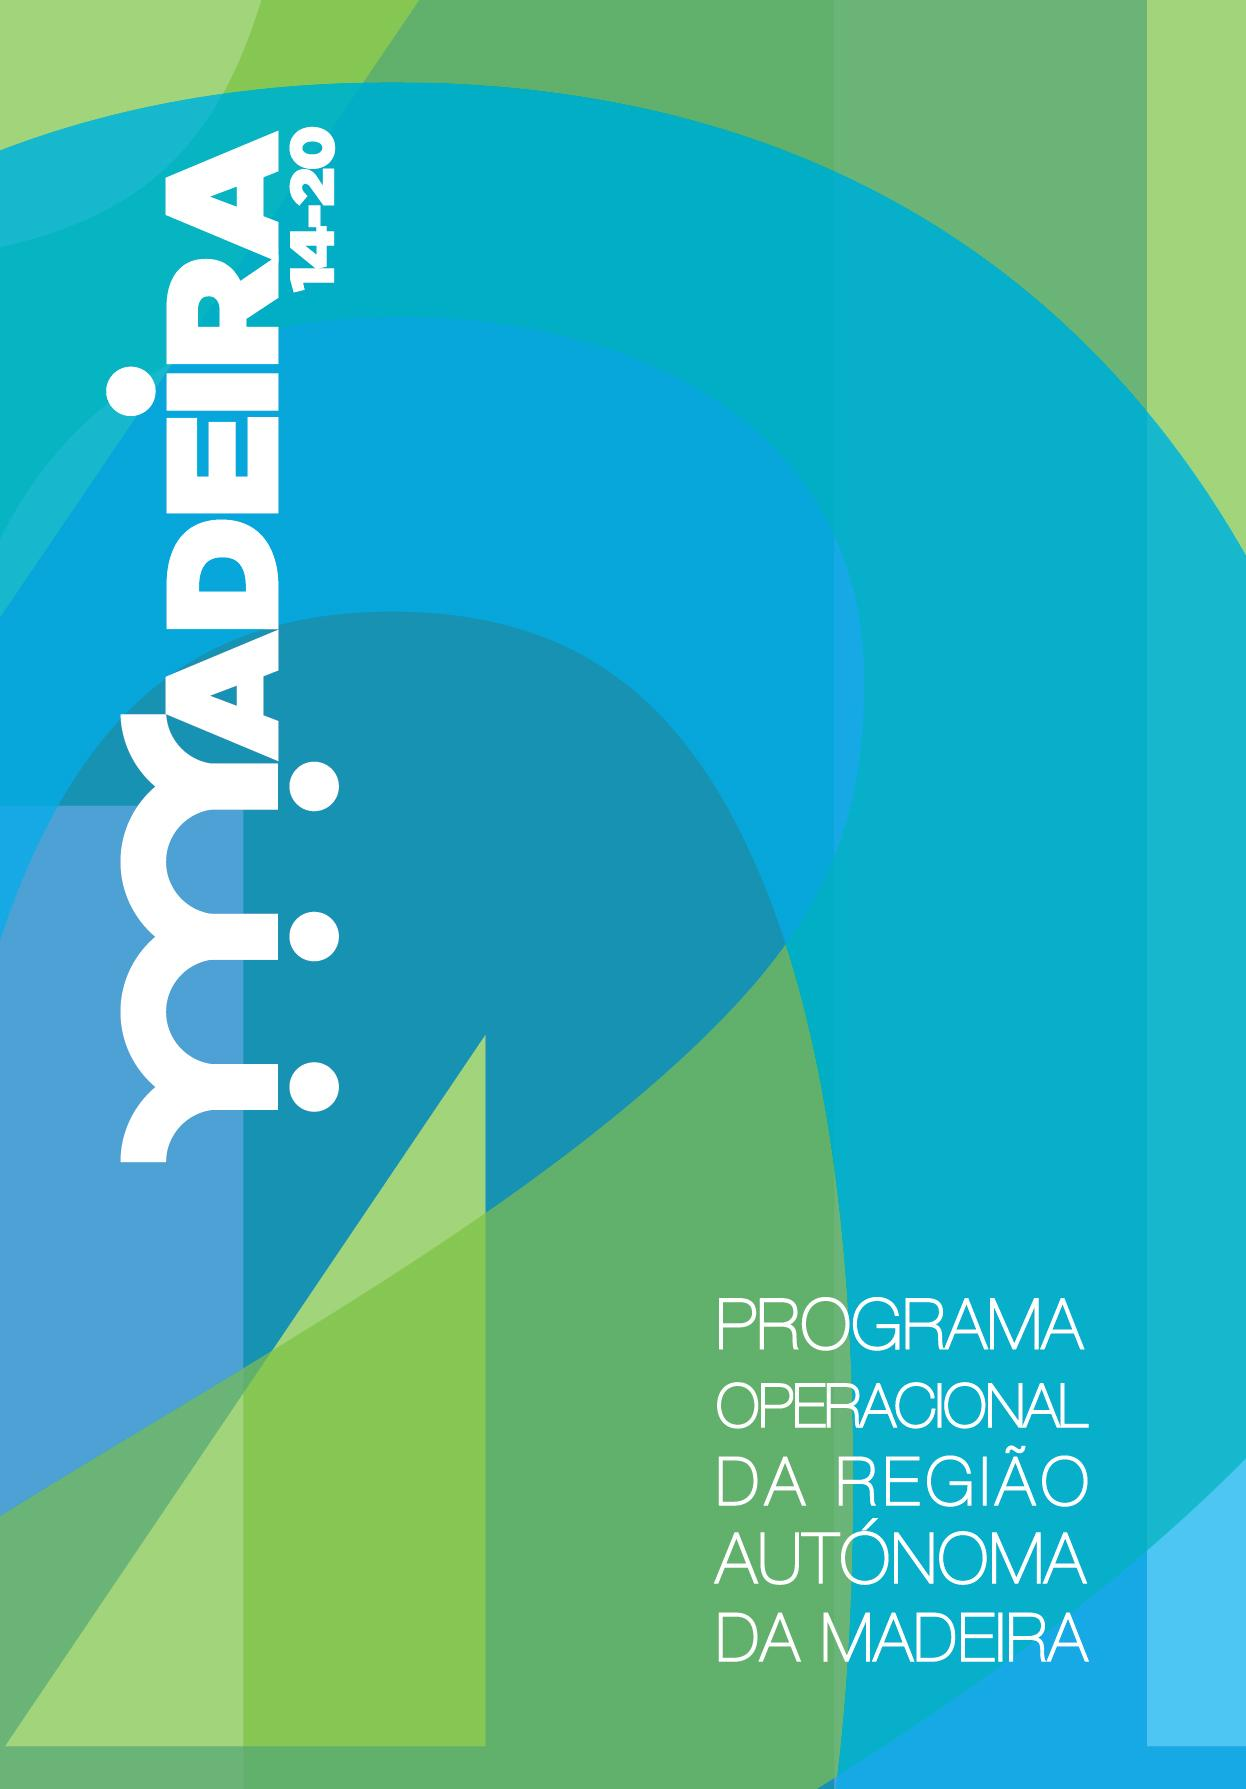 Tipo de Aviso Concurso para Apresentação de Candidaturas Código do Aviso M1420-42-2016-28 Programa Programa Operacional Regional da Madeira 2014-2020 (Madeira14-20) Fundo FEDER - Fundo Europeu de